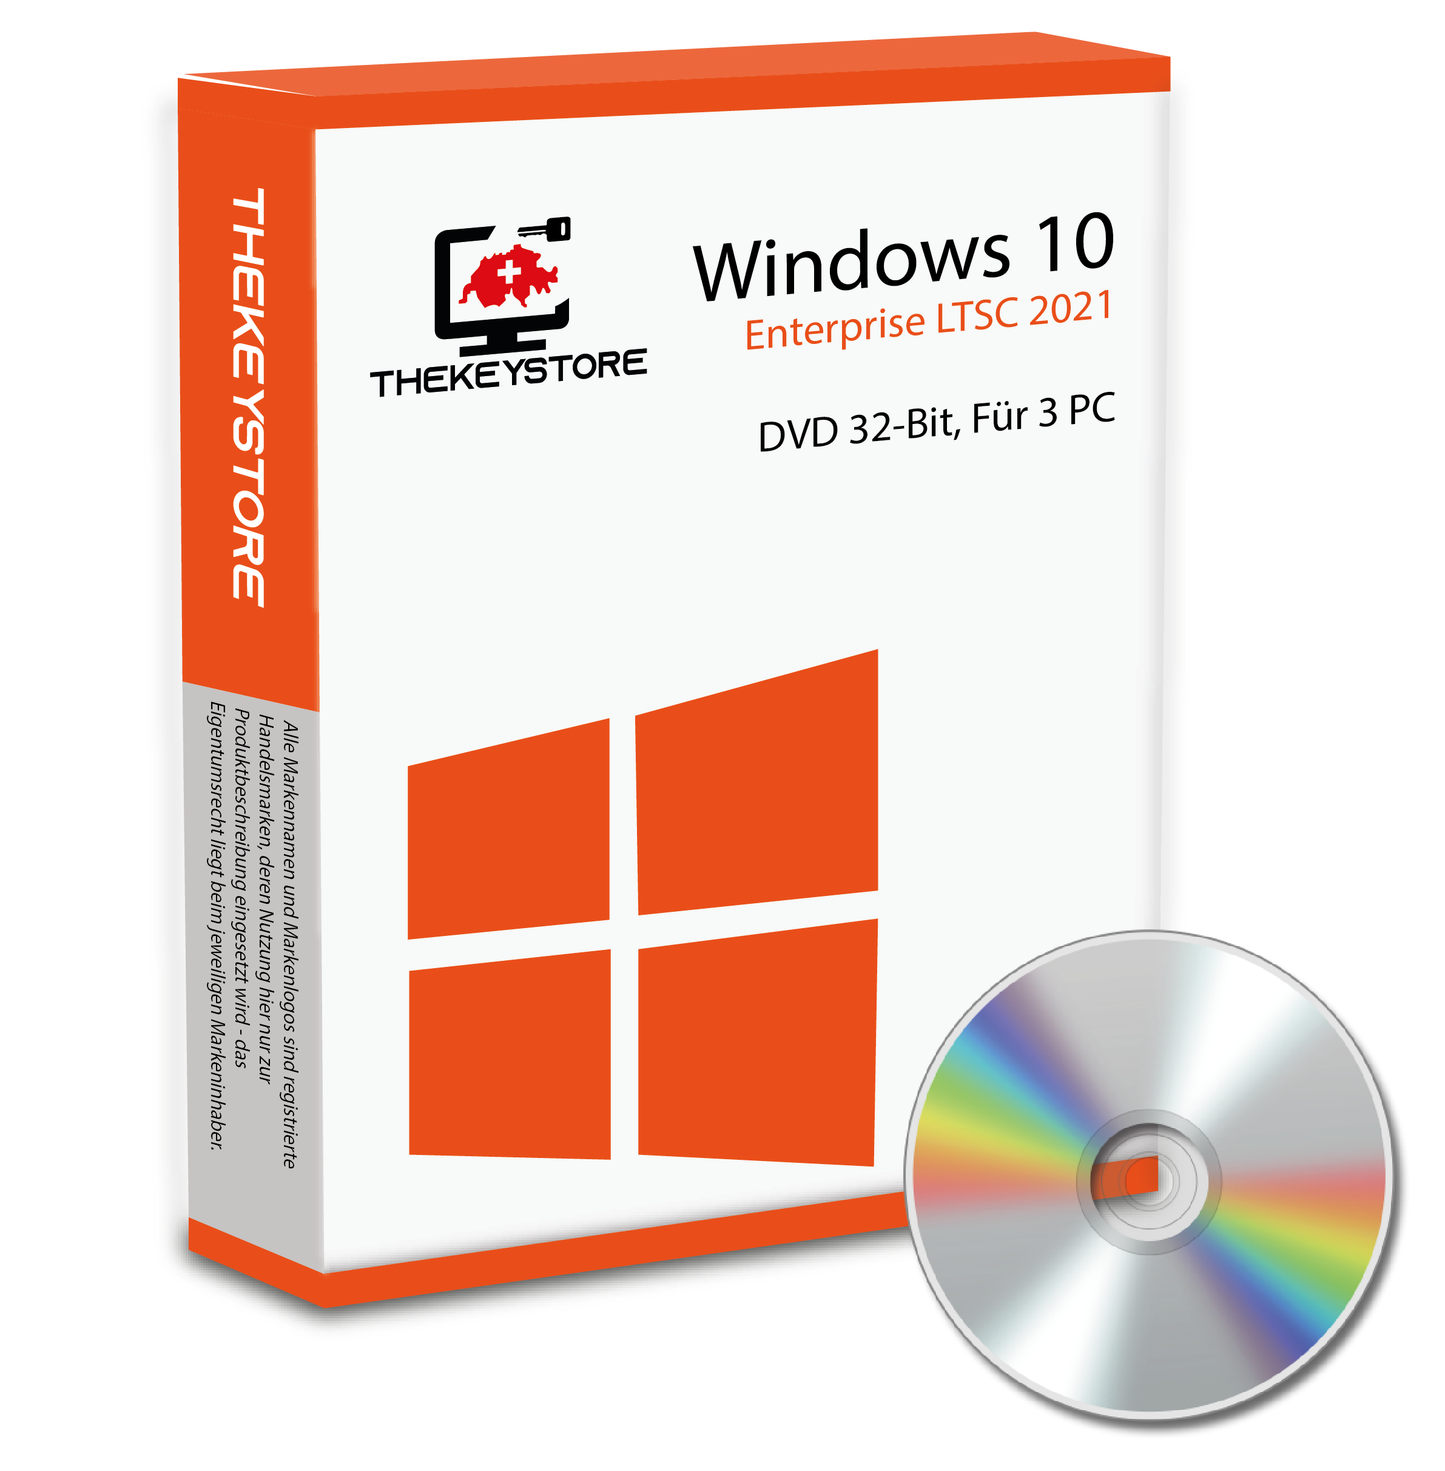 Microsoft Windows 10 Enterprise LTSC 2021 - Für 3 PC - TheKeyStore Schweiz